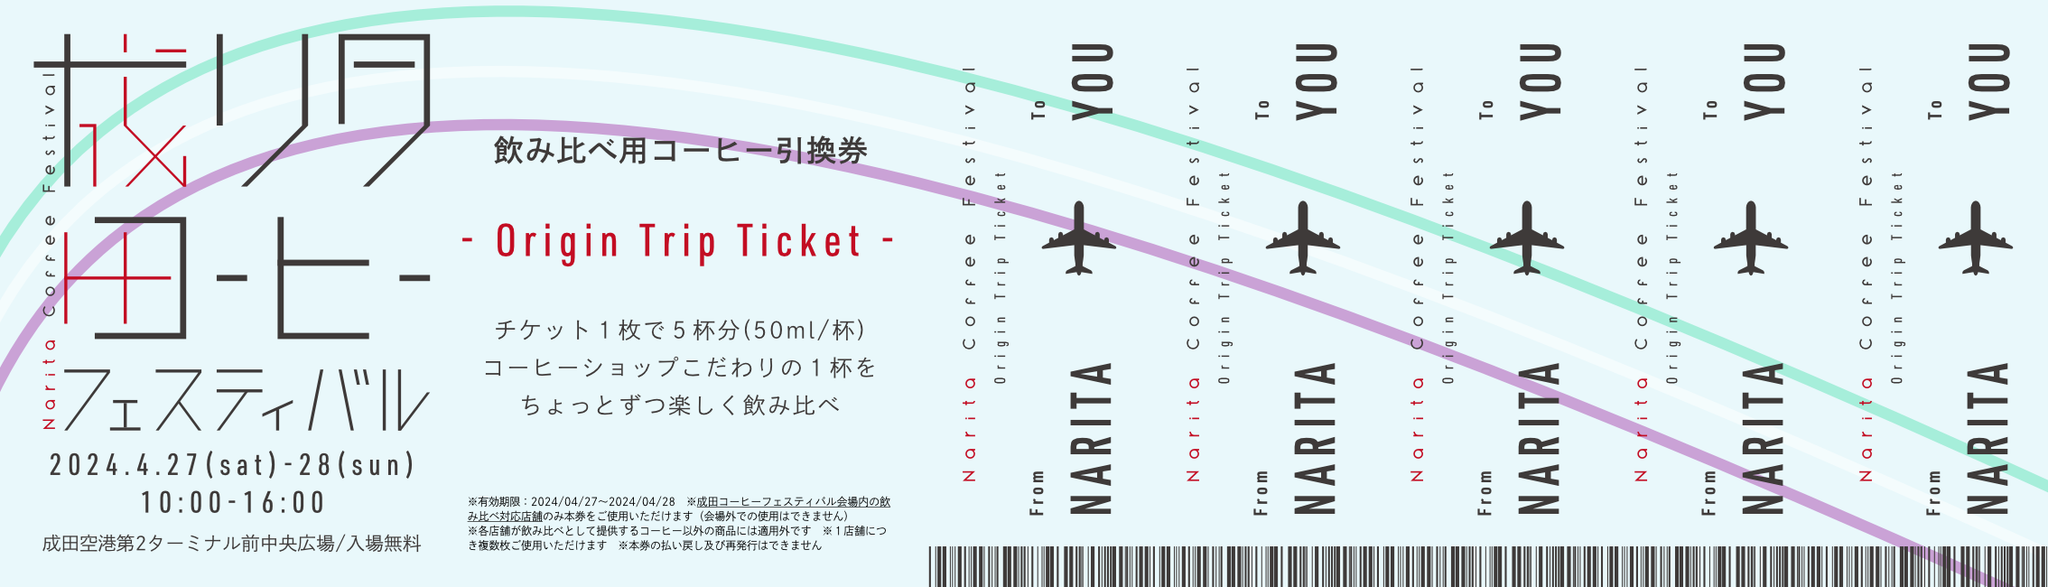 《成田コーヒーフェスティバル/コーヒー飲み比べ企画》 “Origin Trip Ticket” 前売り券